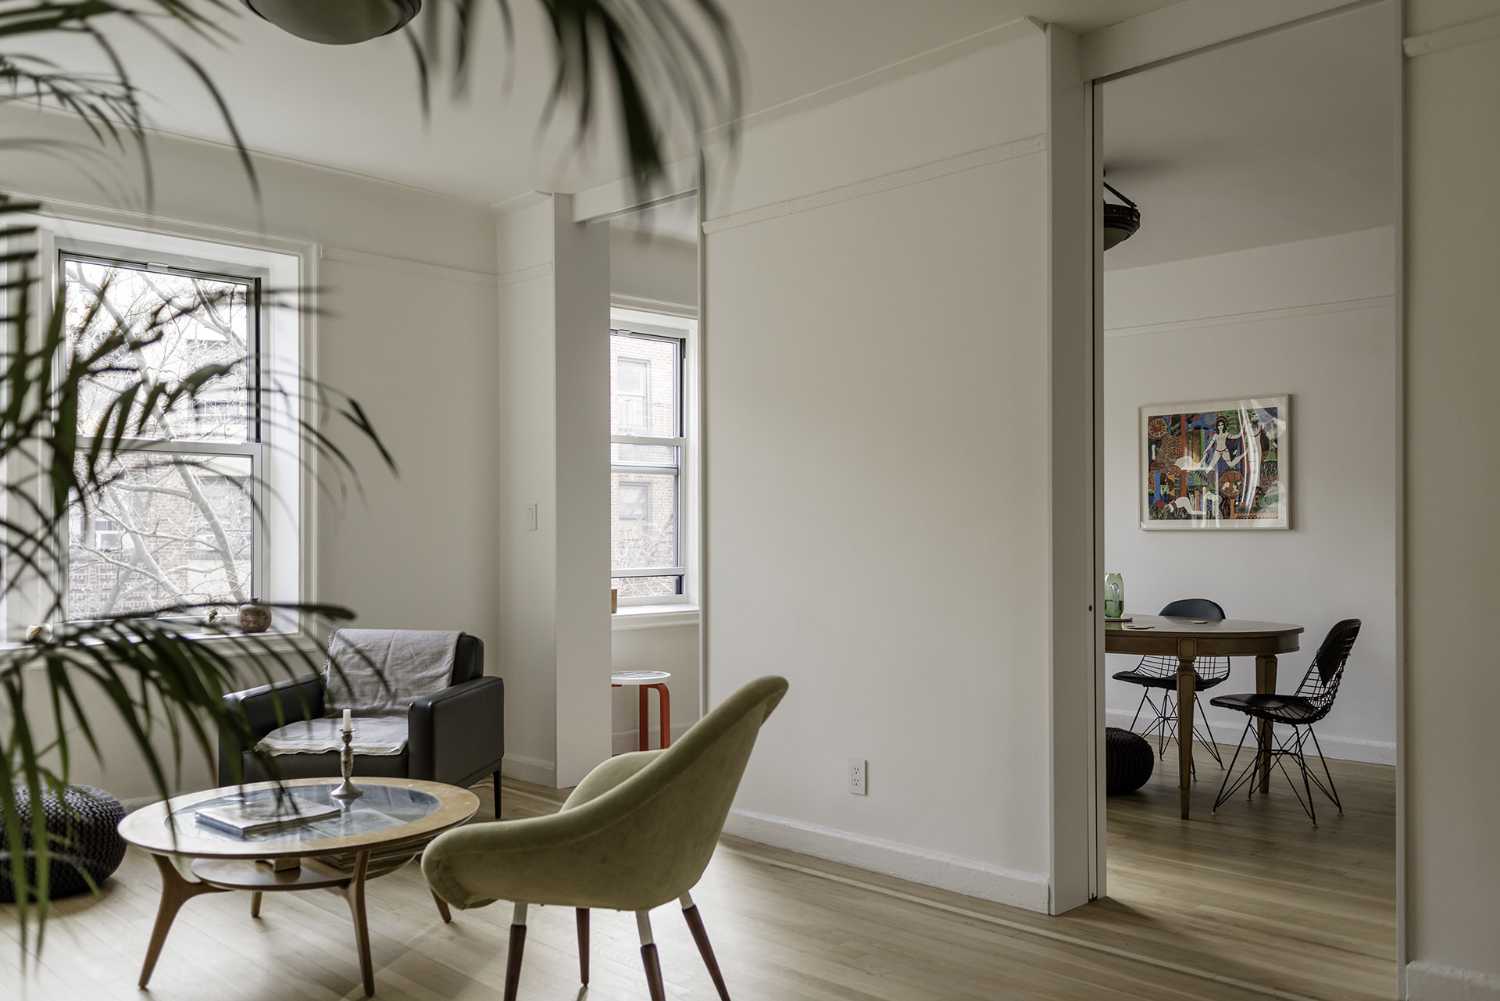 Reestructuración del interior de un apartamento en Nueva York. Restauración de los elementos originales de los años 30 y nuevo concepto espacial